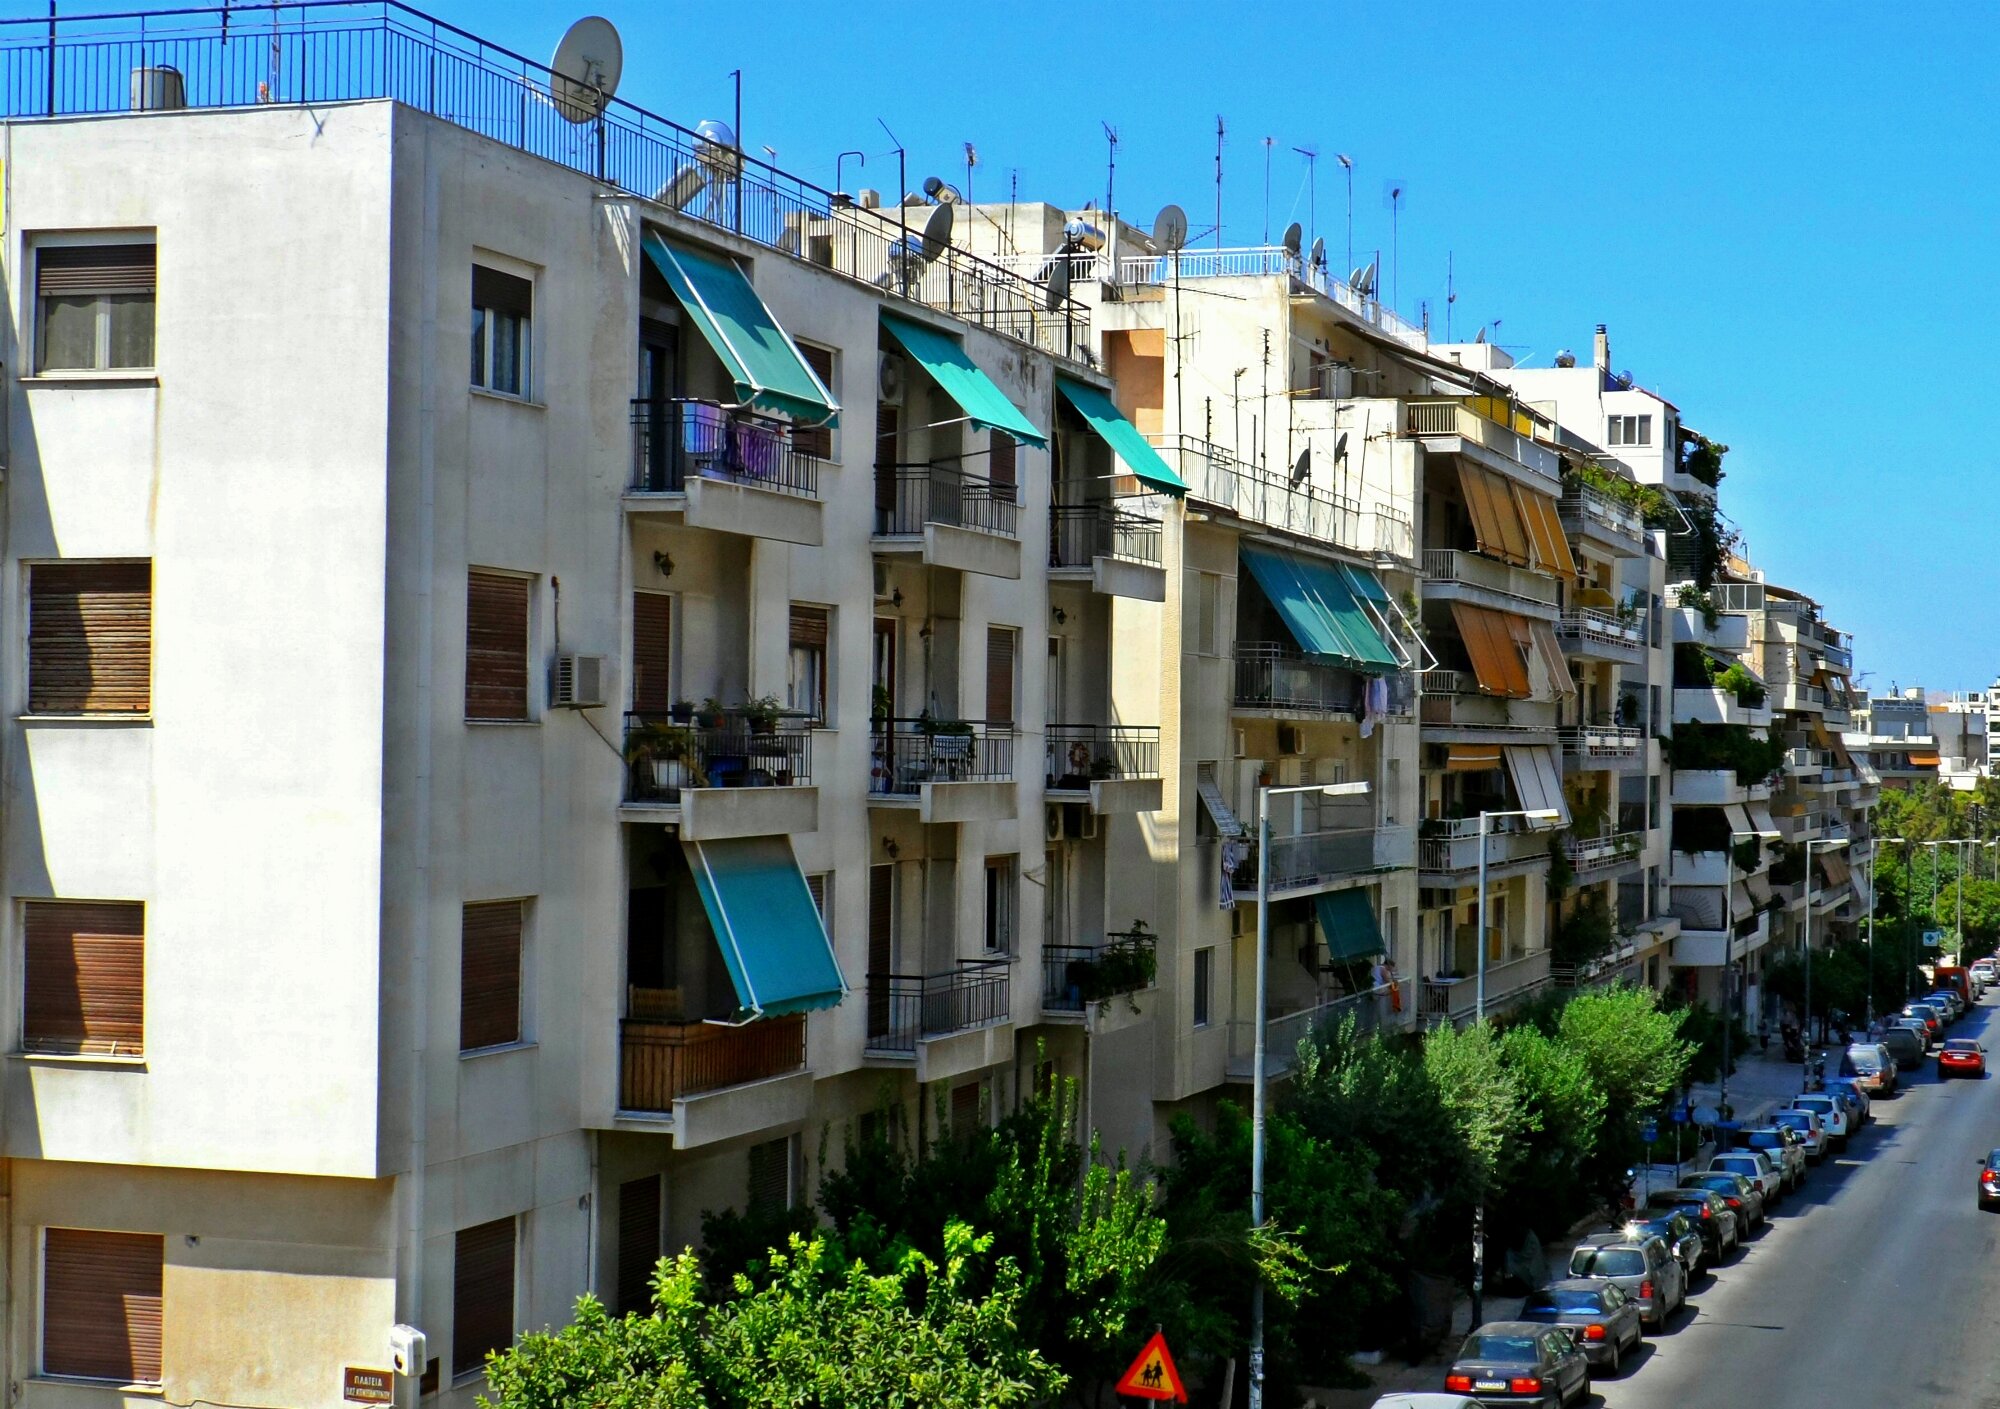 More information about "Αυξημένη κινητικότητα στην αγορά ακινήτων και από το ελληνικό αγοραστικό κοινό"